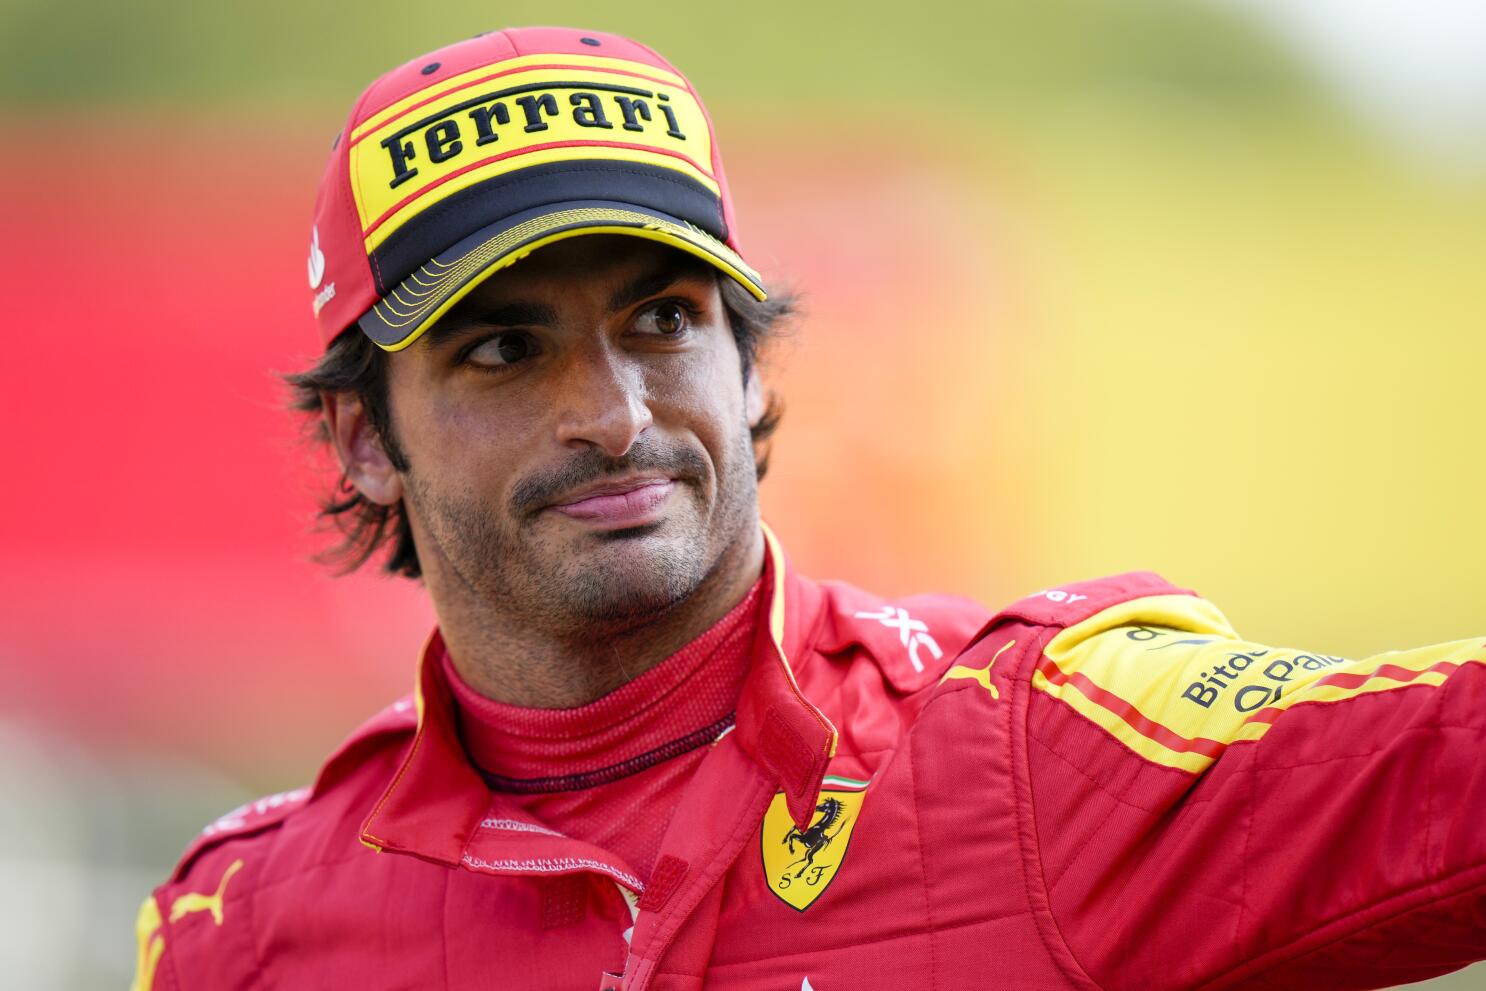 Italian GP: Max Verstappen tops Practice One ahead of Ferrari's